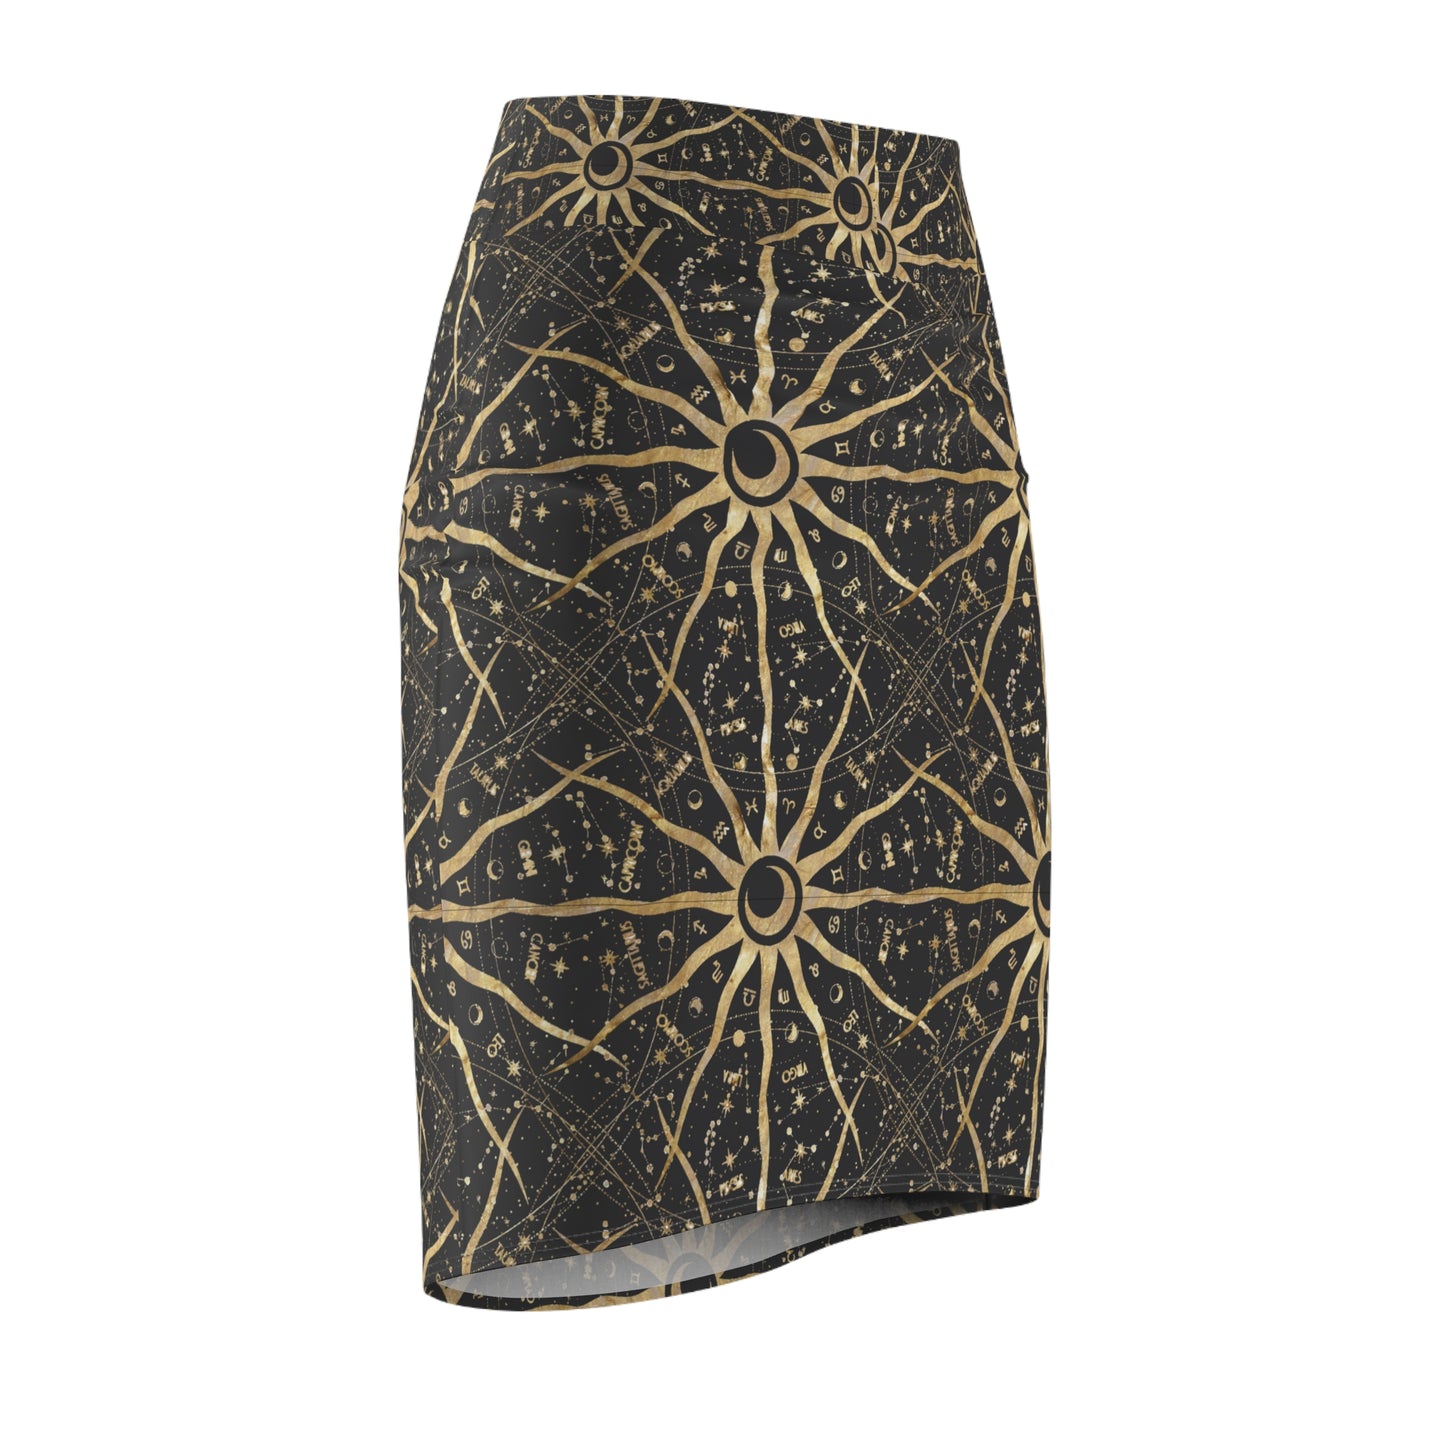 Ancient Sun Women's Pencil Skirt